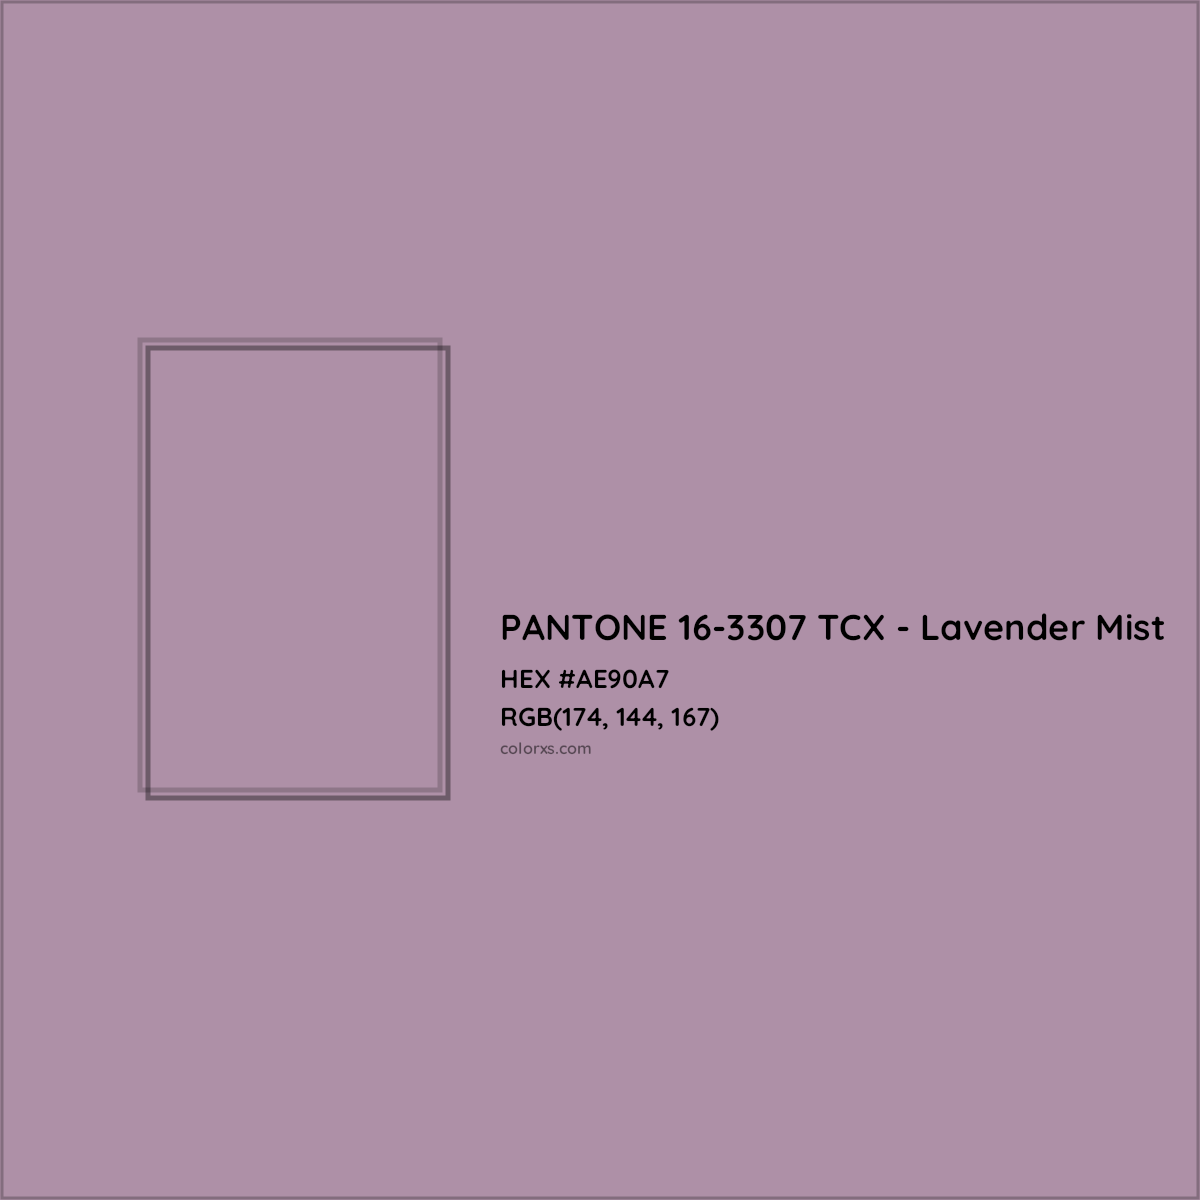 HEX #AE90A7 PANTONE 16-3307 TCX - Lavender Mist CMS Pantone TCX - Color Code